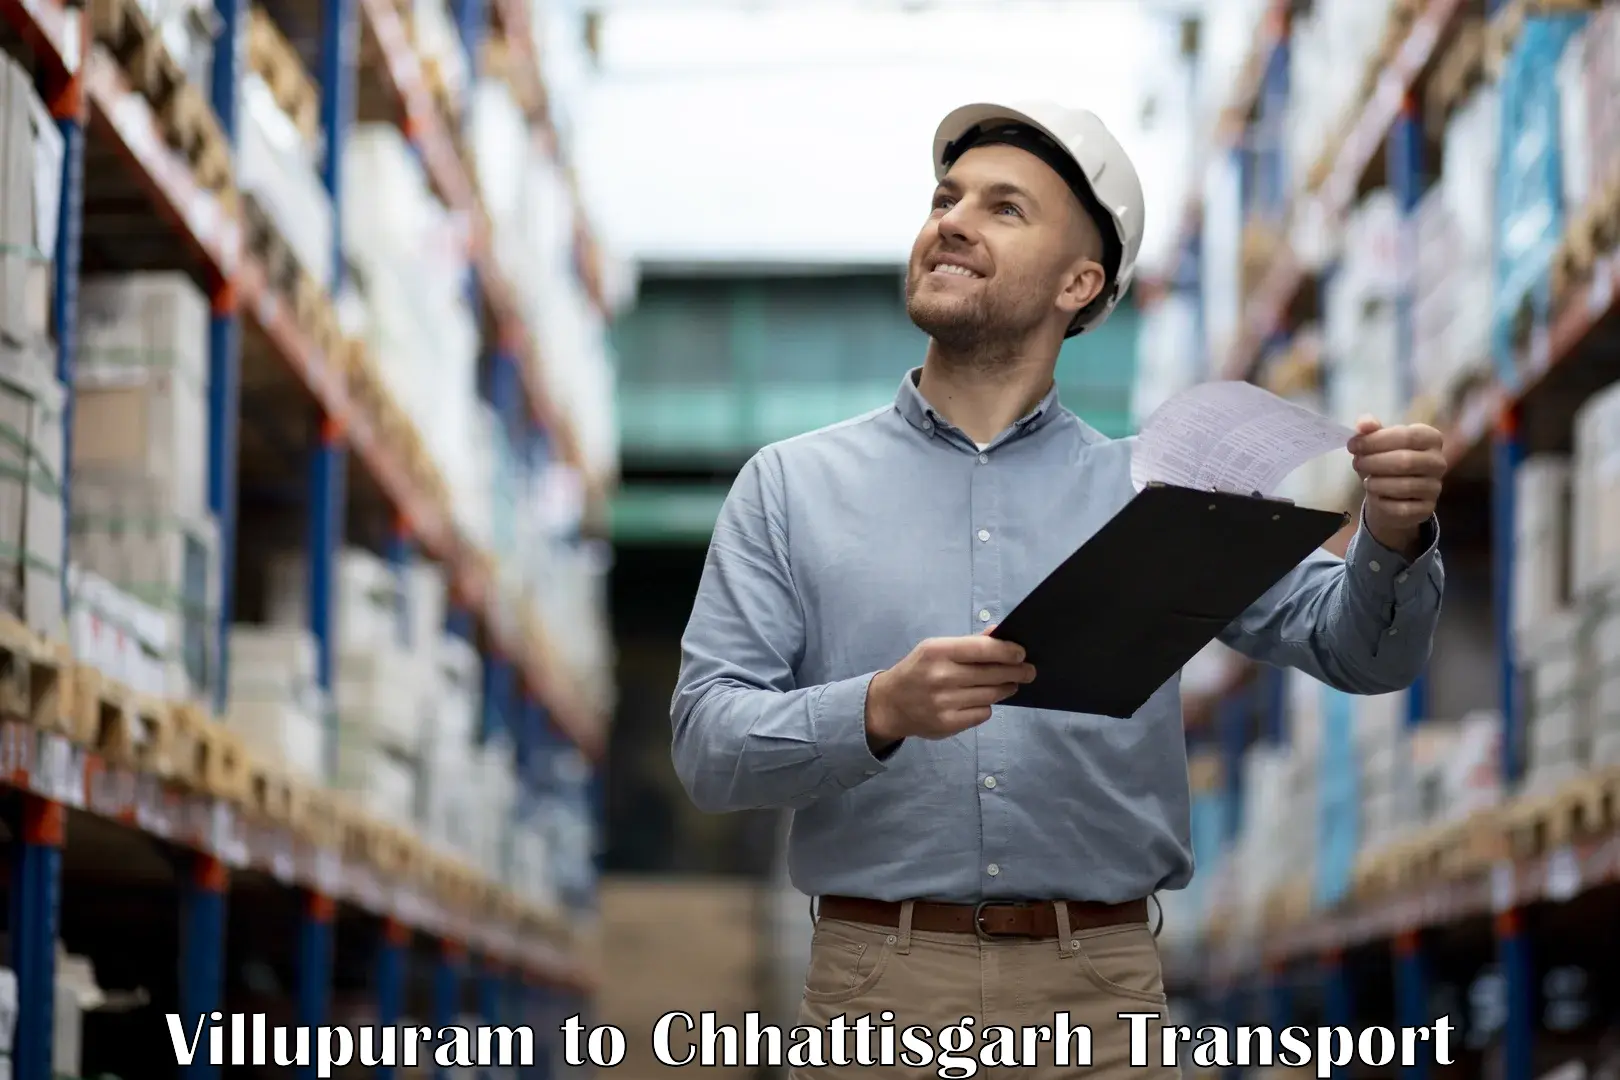 Commercial transport service in Villupuram to Patna Chhattisgarh